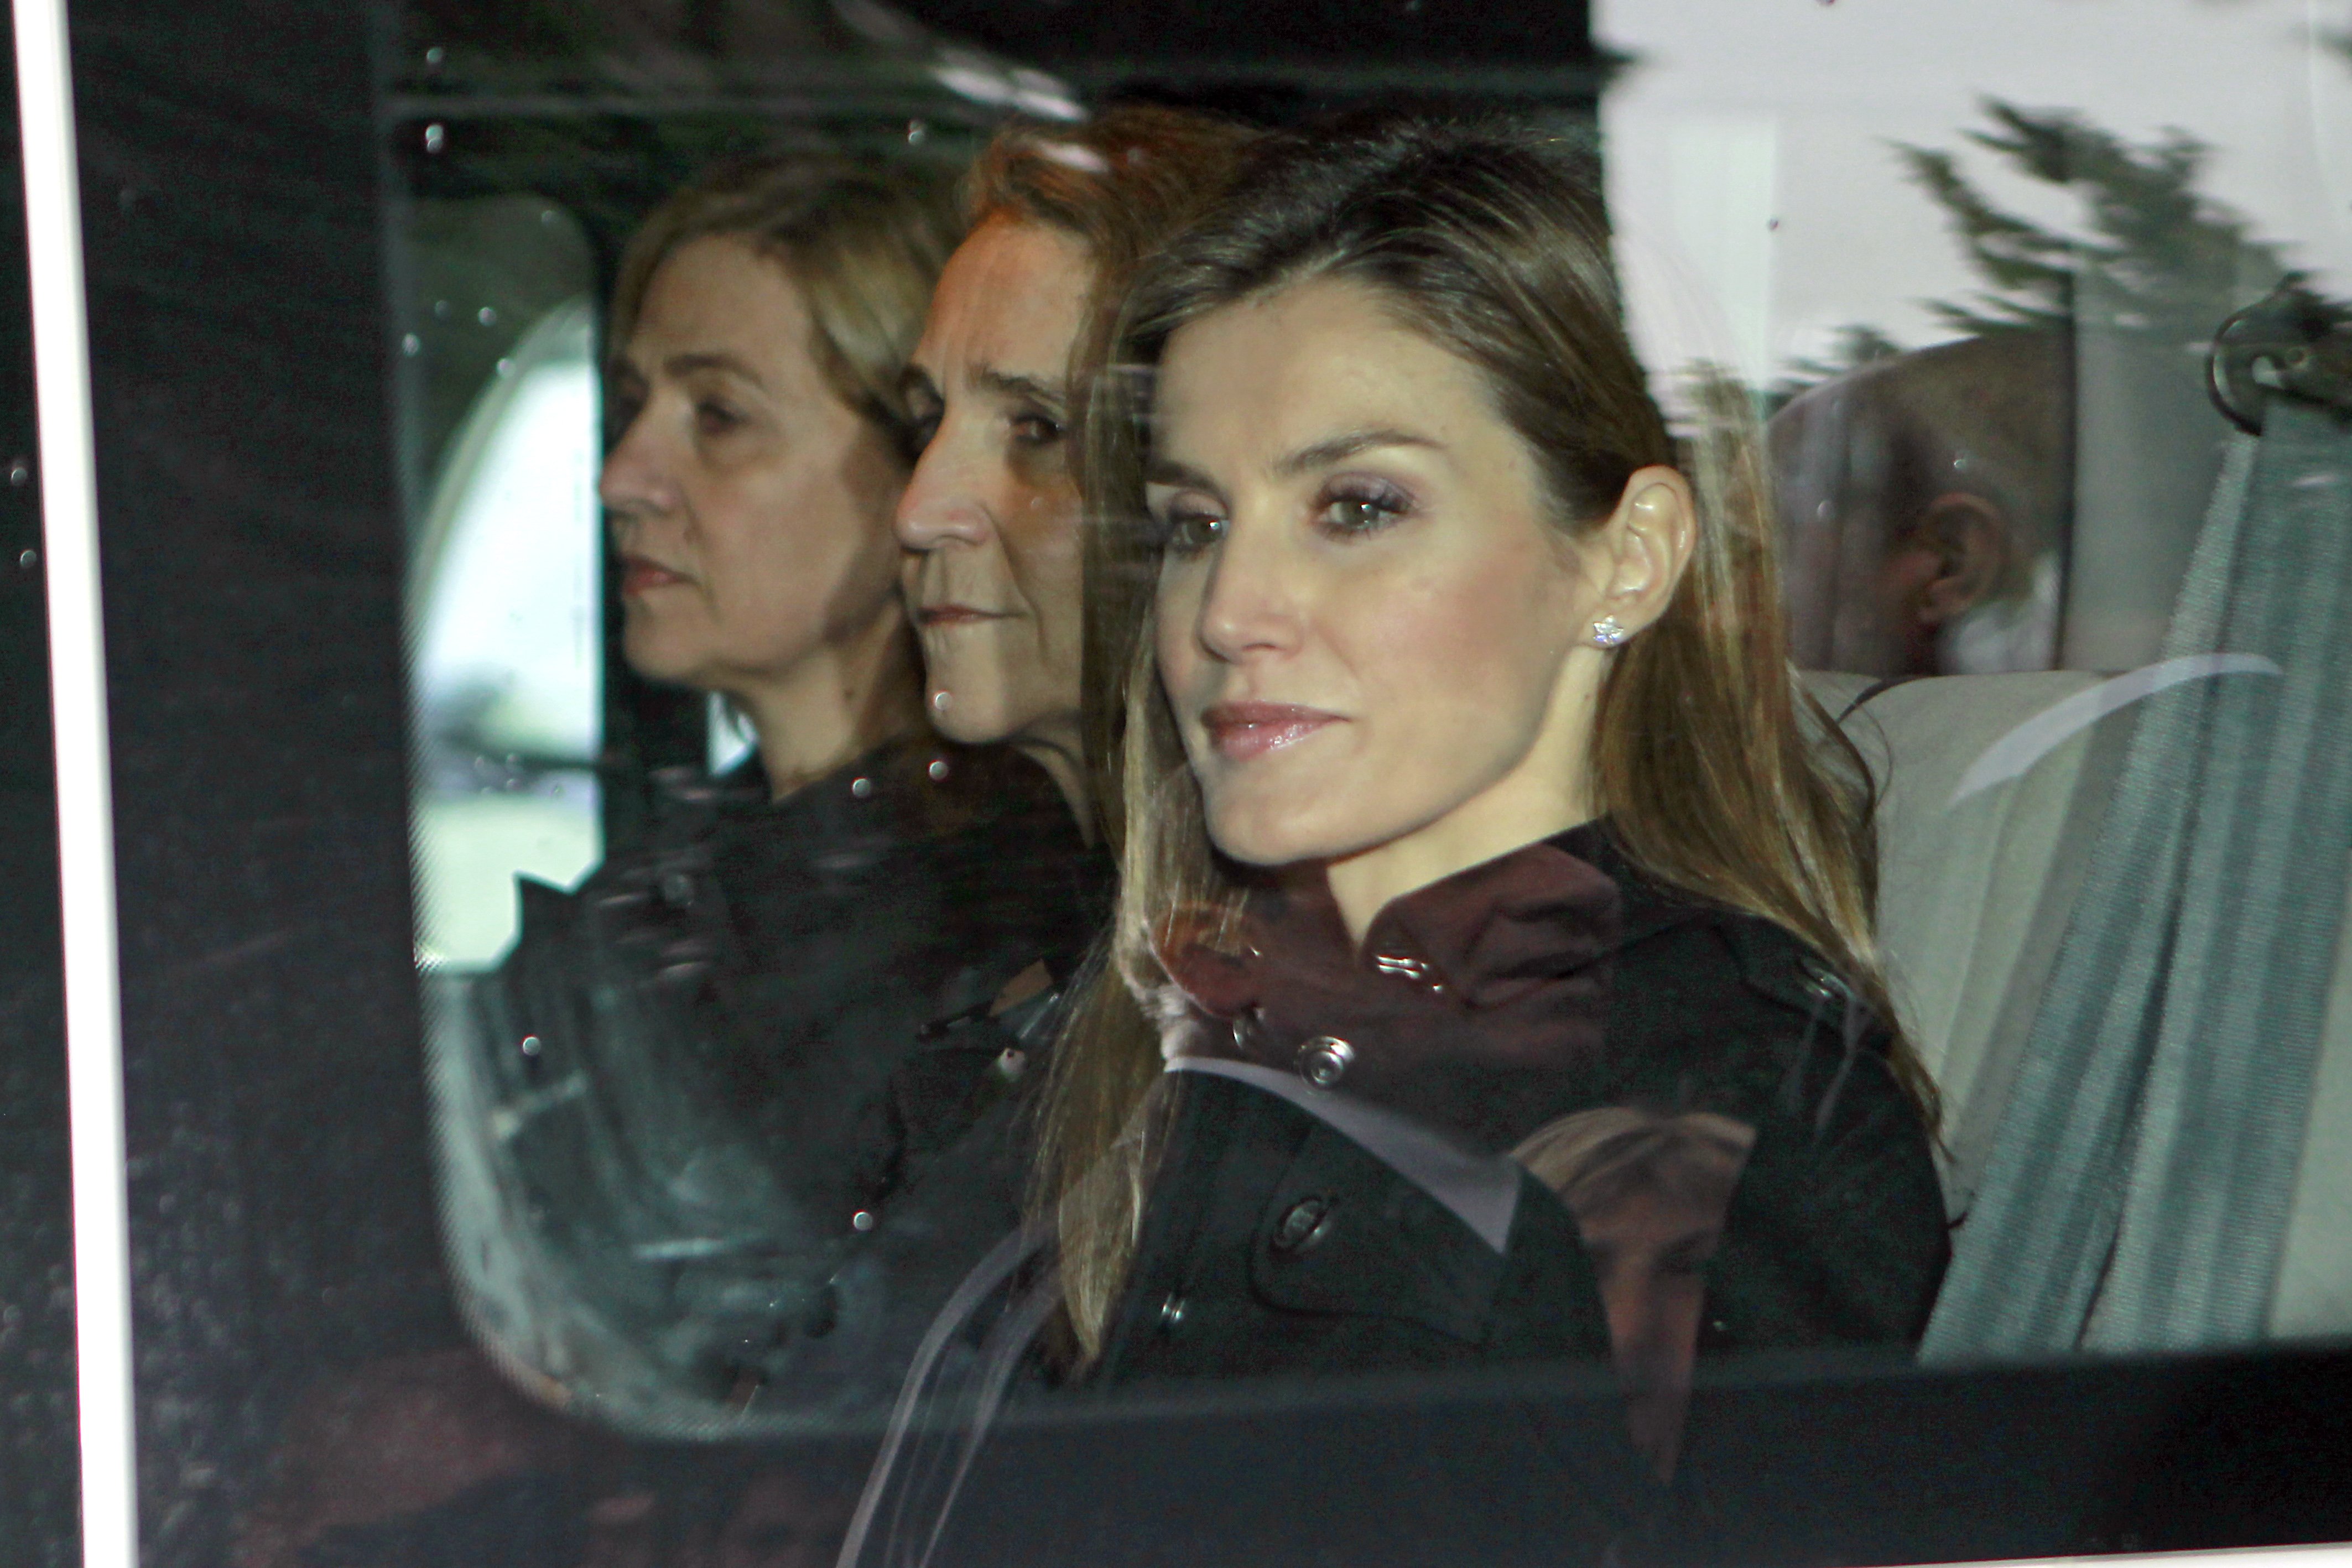 Bufetada a la cara de Cristina i Elena a un famós local de Madrid: fora, no tenen cabuda allà